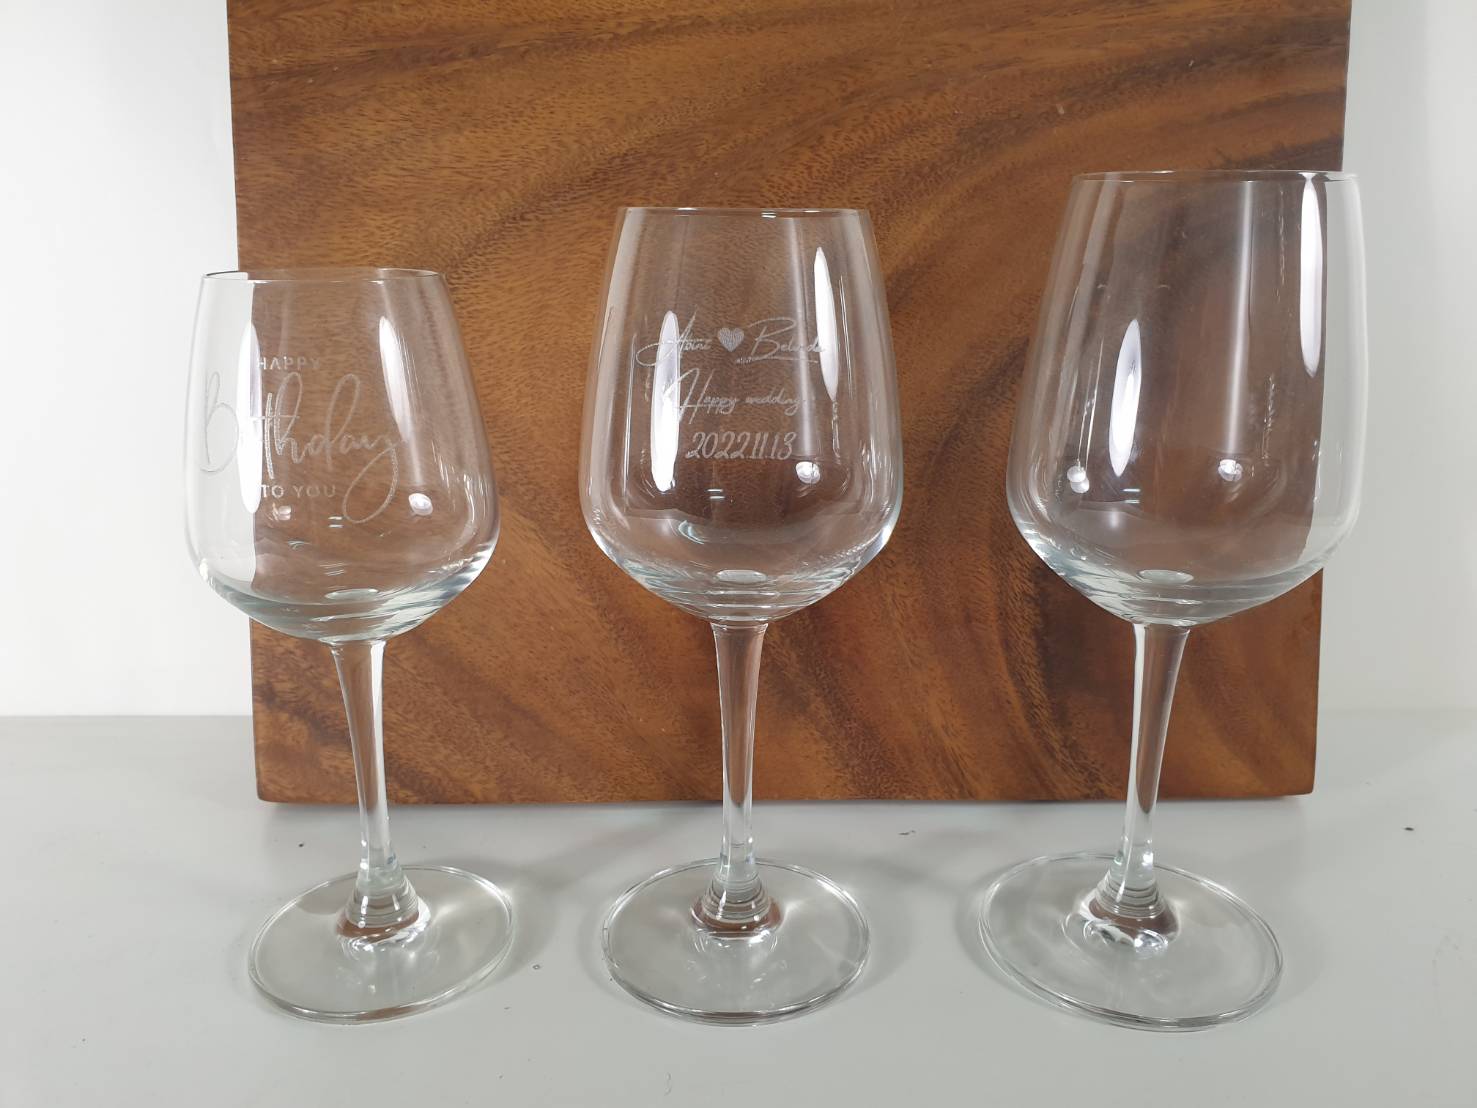 玻璃杯雕刻 |  標準紅酒杯系列 |  專屬木盒包裝單入 | 第四張展示圖